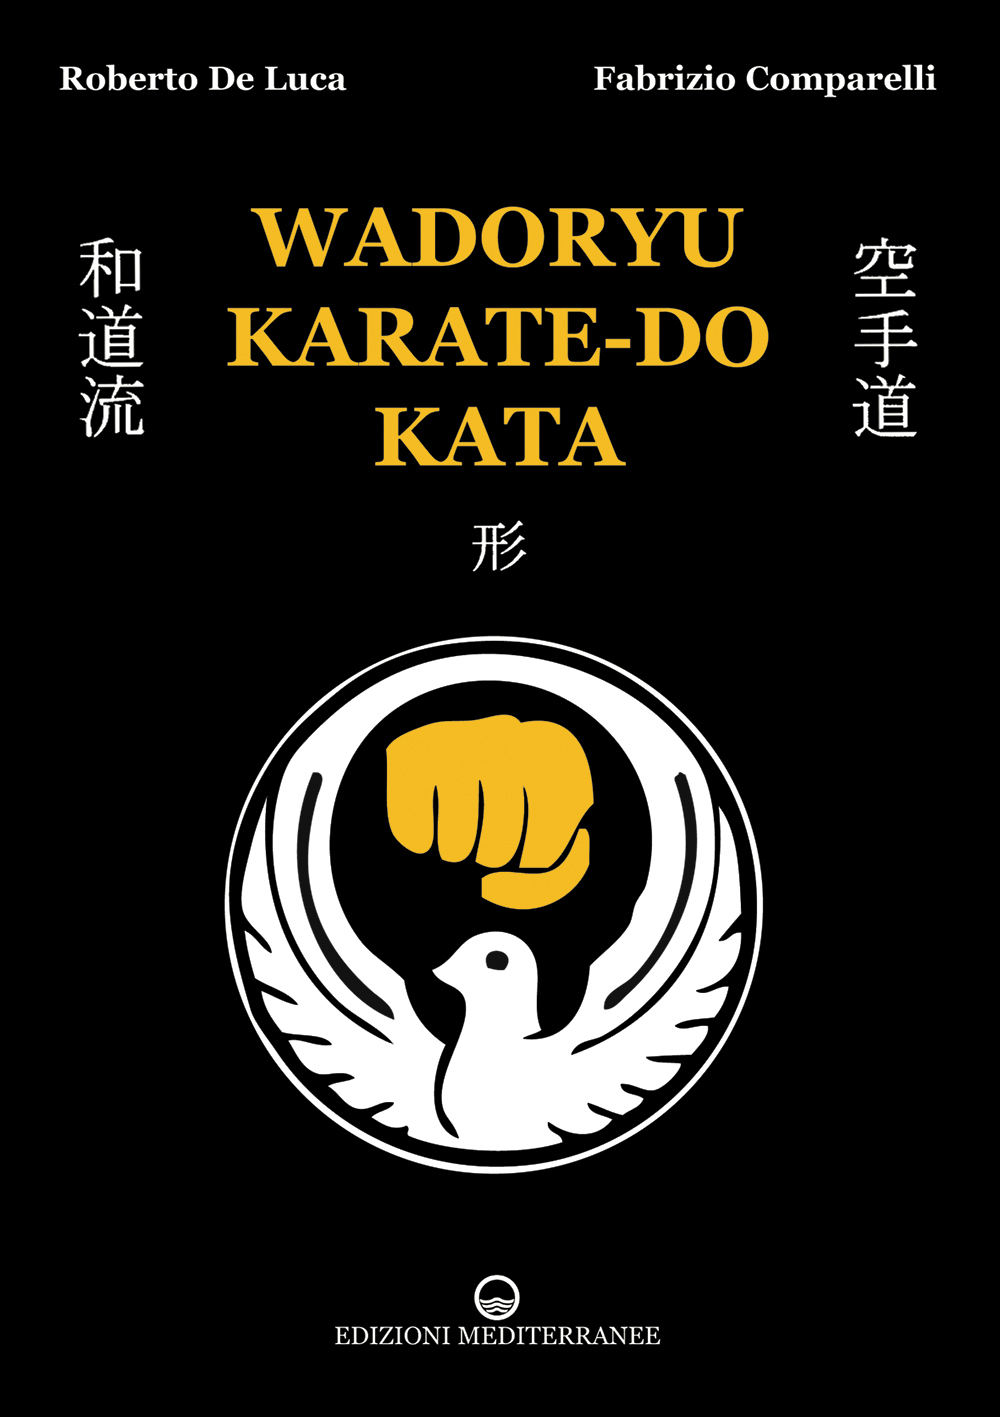 Libri De Luca Roberto / Fabrizio Comparelli - Wadoryu Karate-Do Kata NUOVO SIGILLATO, EDIZIONE DEL 08/10/2014 SUBITO DISPONIBILE